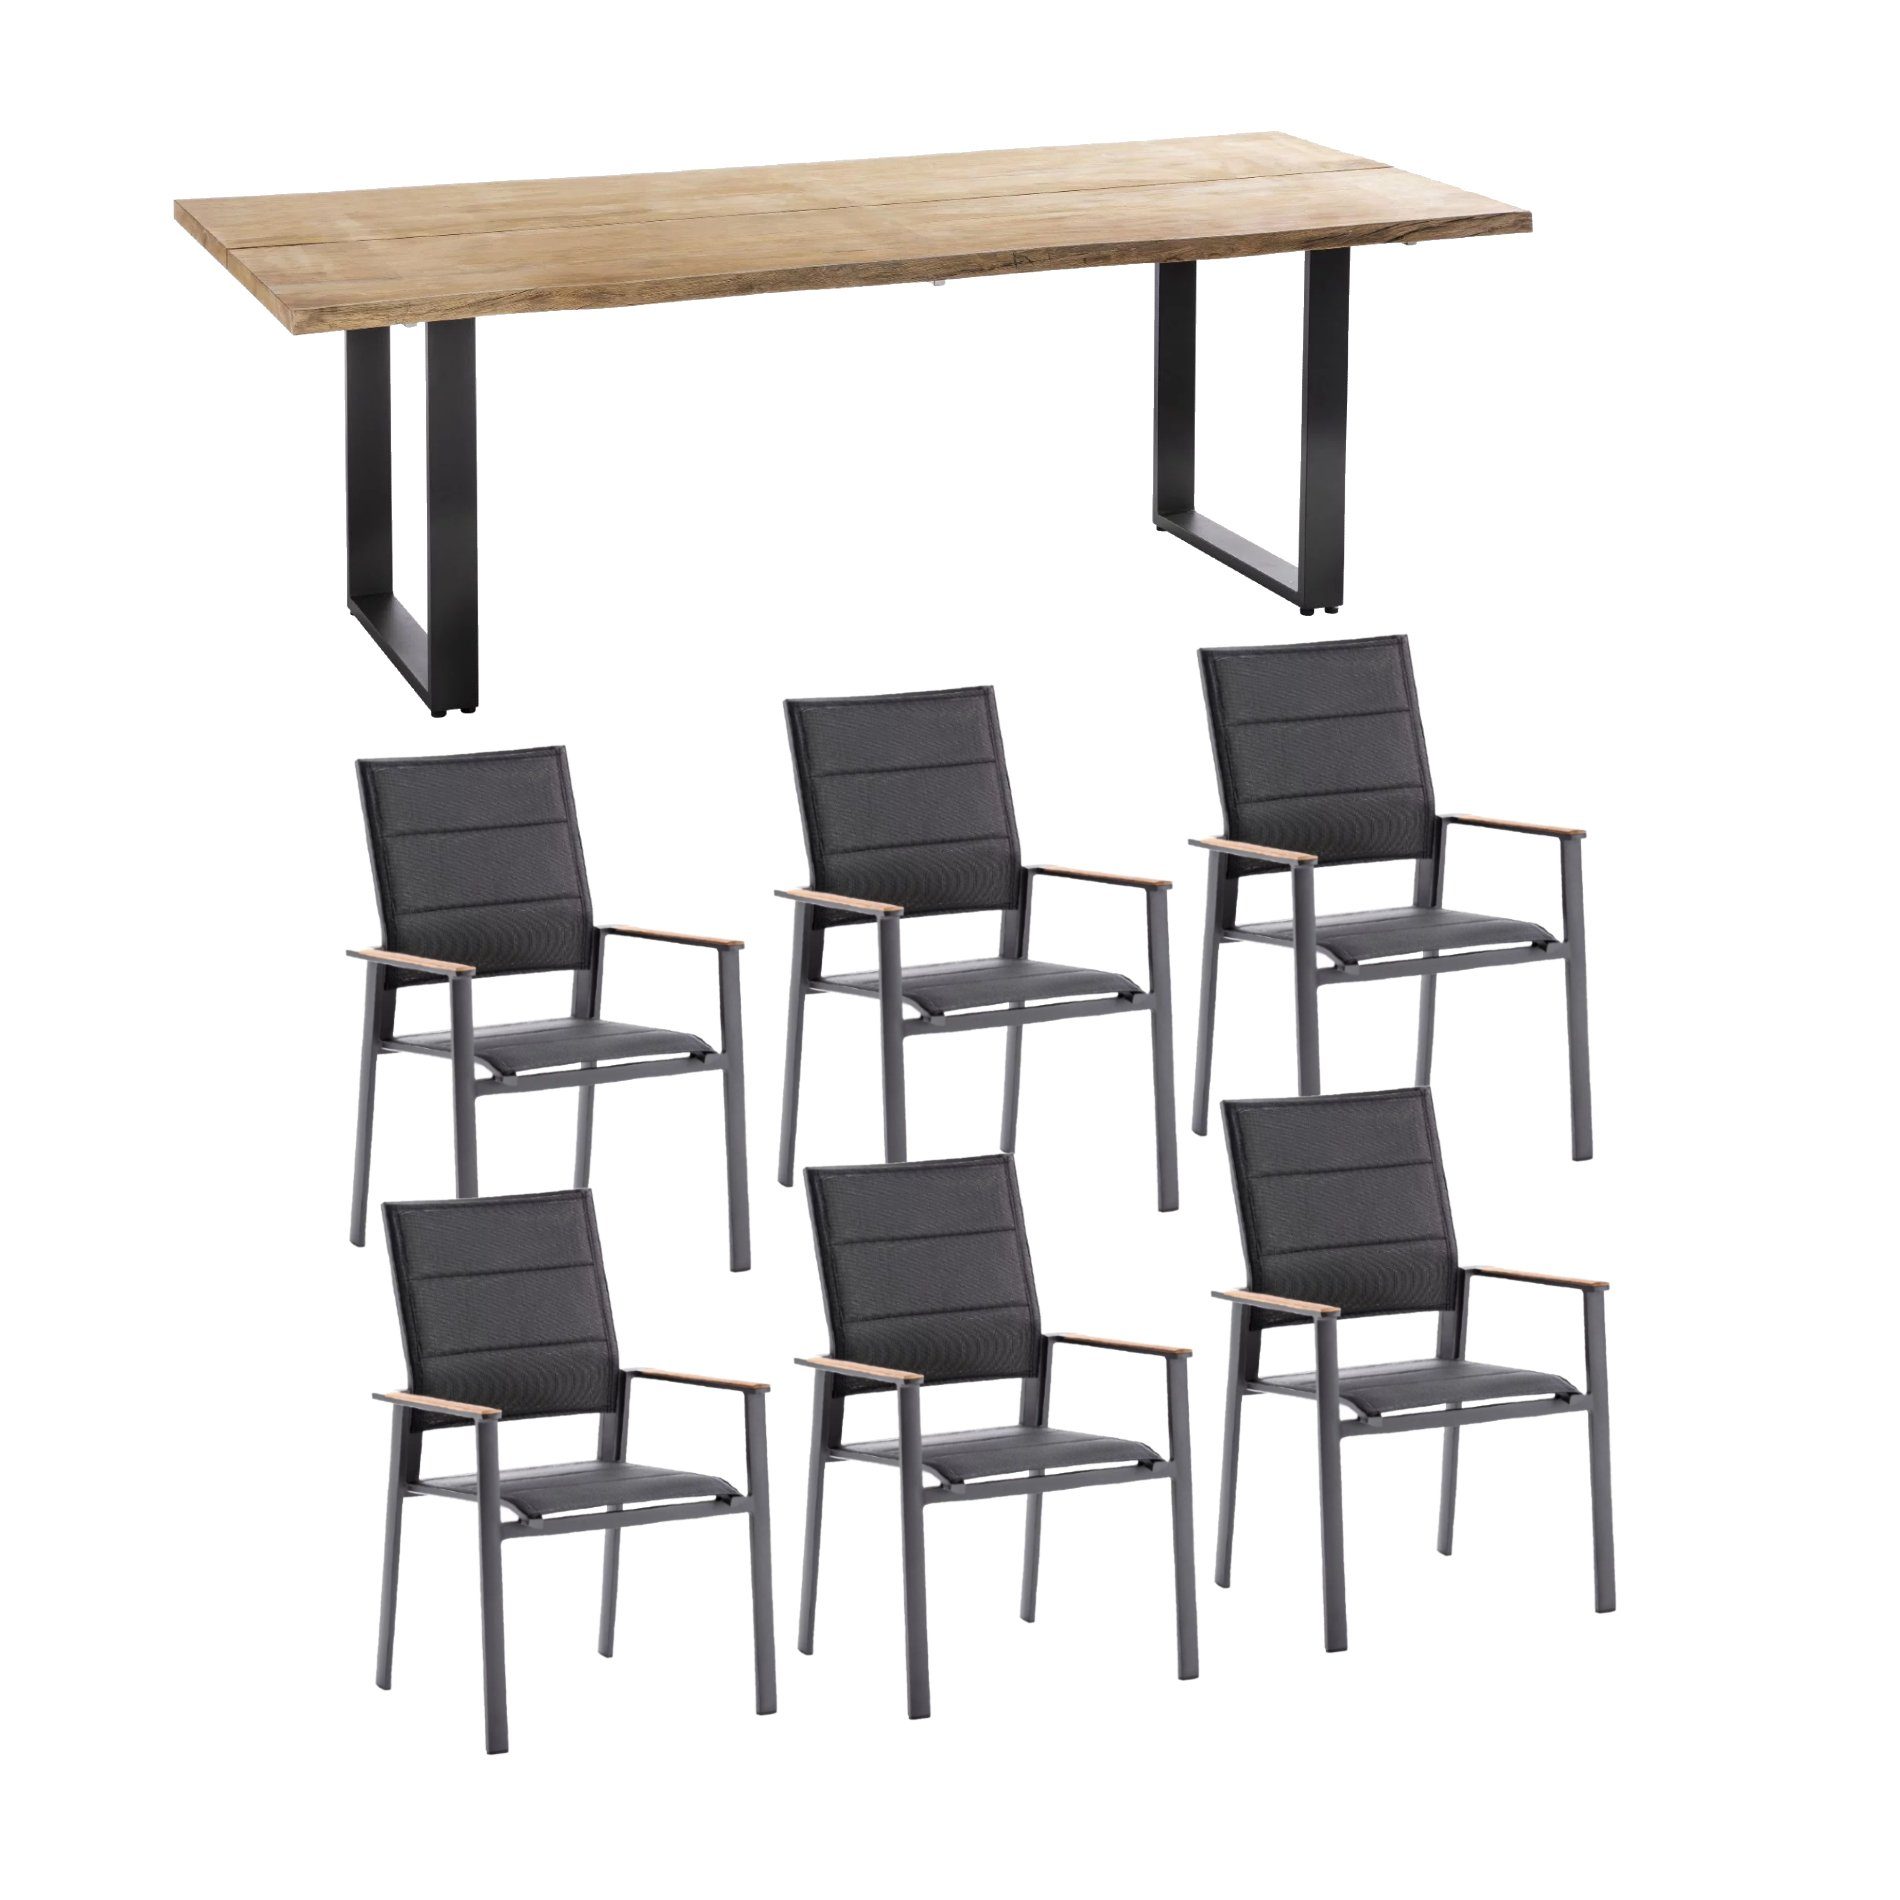 Niehoff Gartenmöbel-Set mit Tisch "Solid" und Stapelstuhl "Revent", Aluminium anthrazit, Tischplatte Teak, Sitz-und Rückenfläche gepolstert schwarz